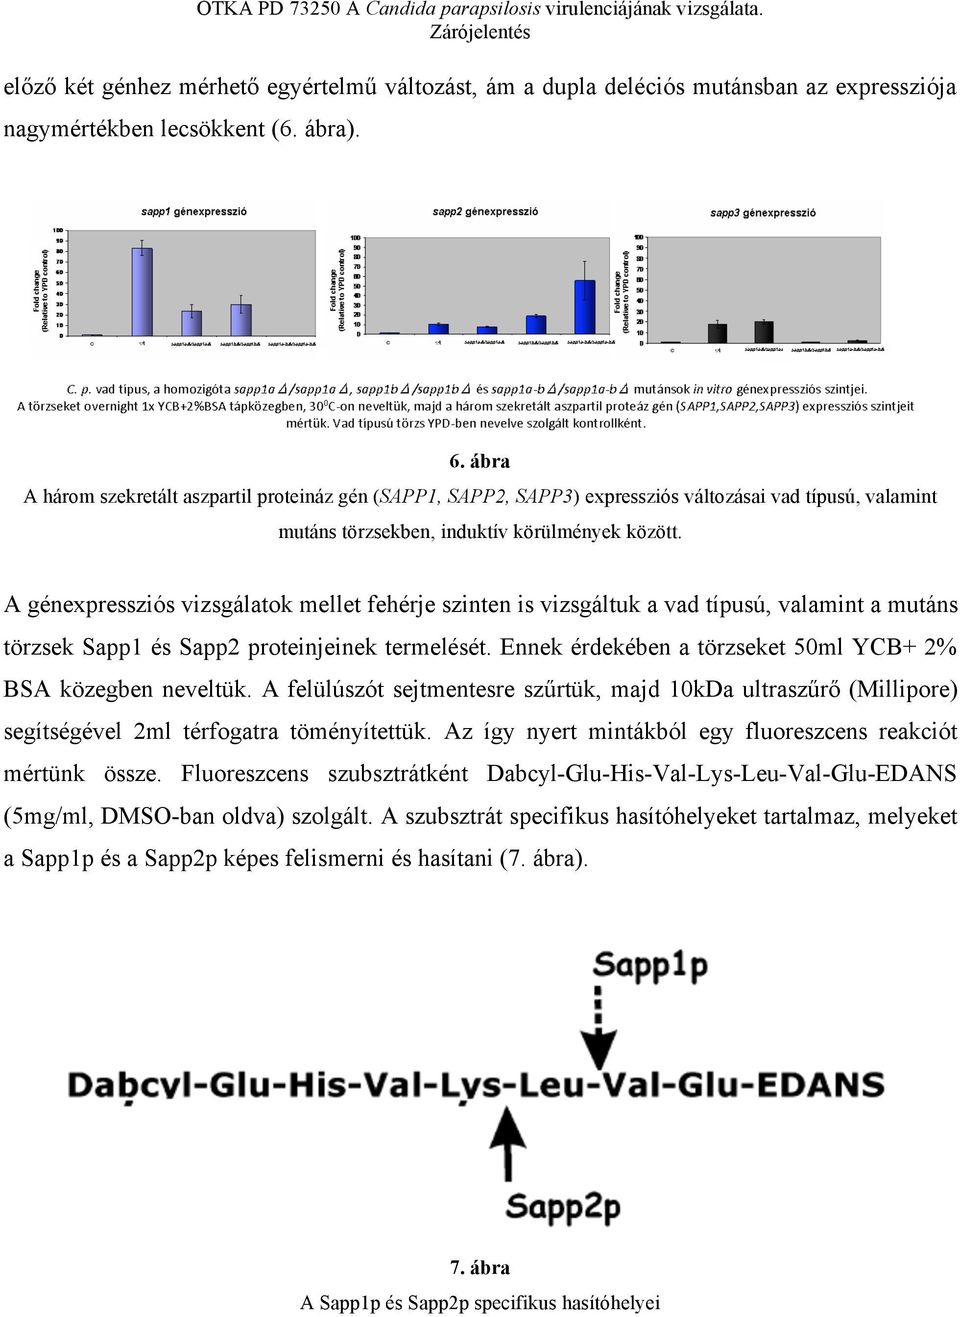 A génexpressziós vizsgálatok mellet fehérje szinten is vizsgáltuk a vad típusú, valamint a mutáns törzsek Sapp1 és Sapp2 proteinjeinek termelését.